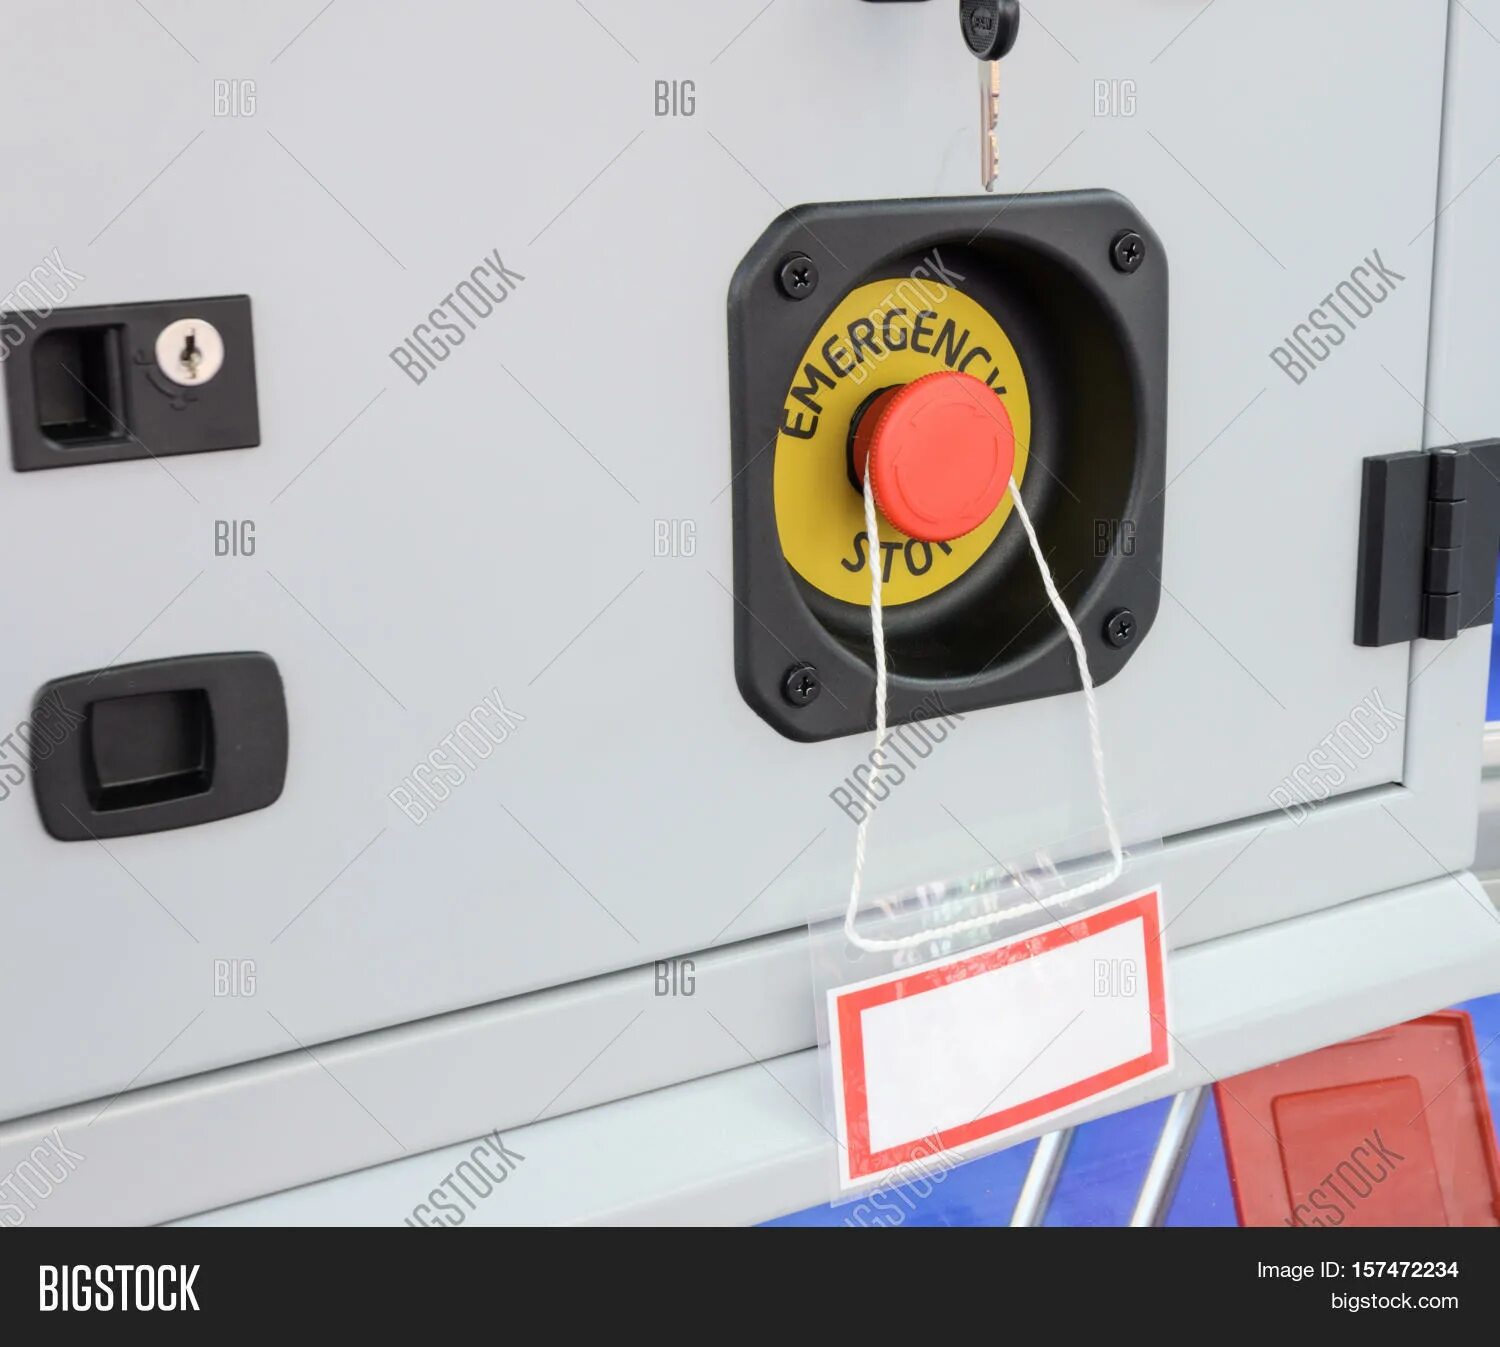 Отключение станка. Кнопка аварийного останова вектор 410. Знак кнопки аварийной остановки оборудования. Аварийная кнопка стоп для станка. Кнопка аварийного отключения станка.